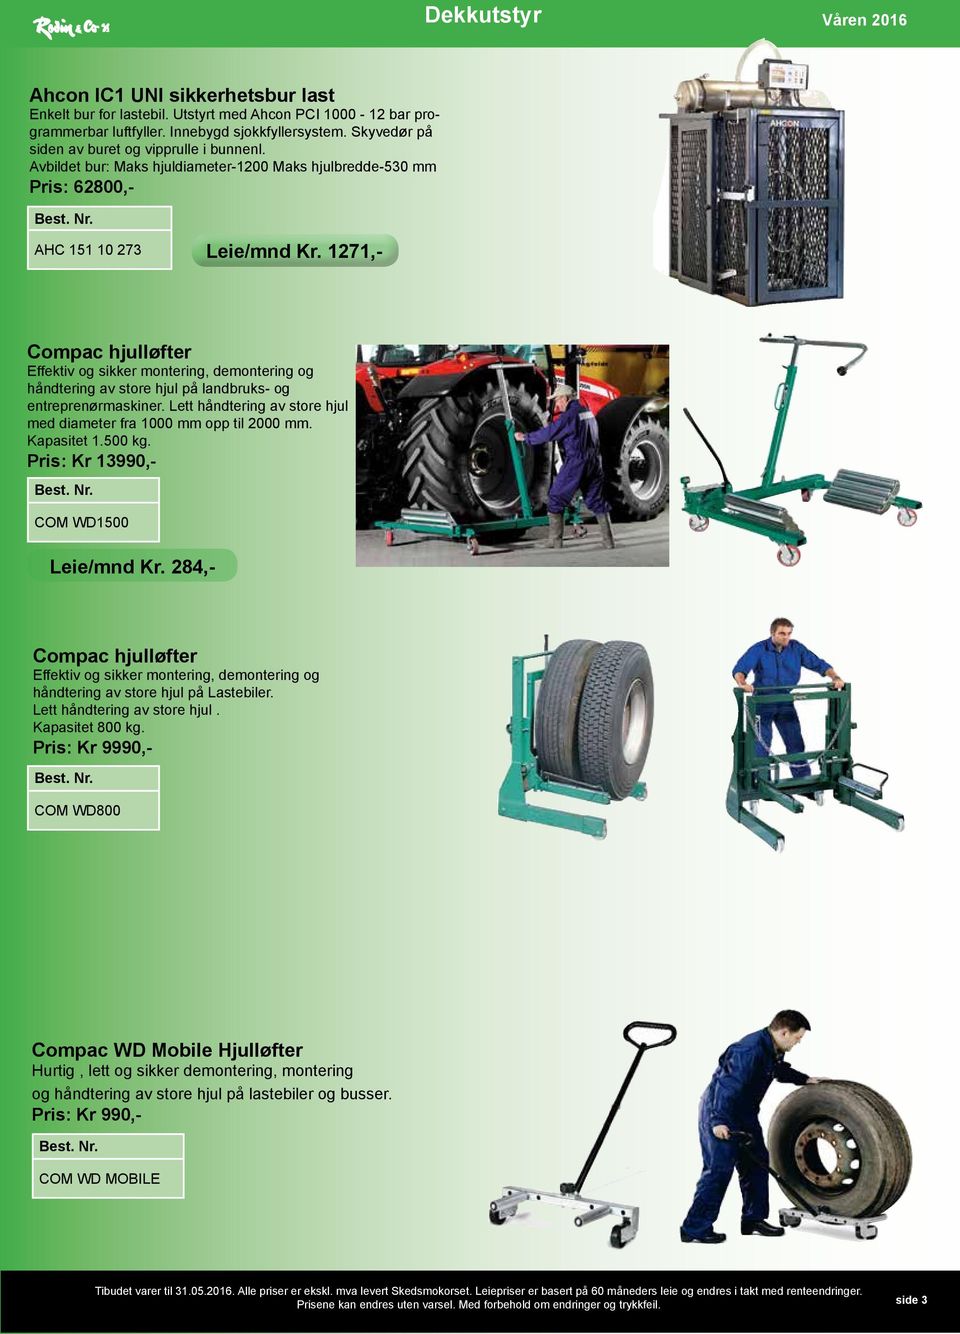 1271,- Compac hjulløfter Effektiv og sikker montering, demontering og håndtering av store hjul på landbruks- og entreprenørmaskiner.